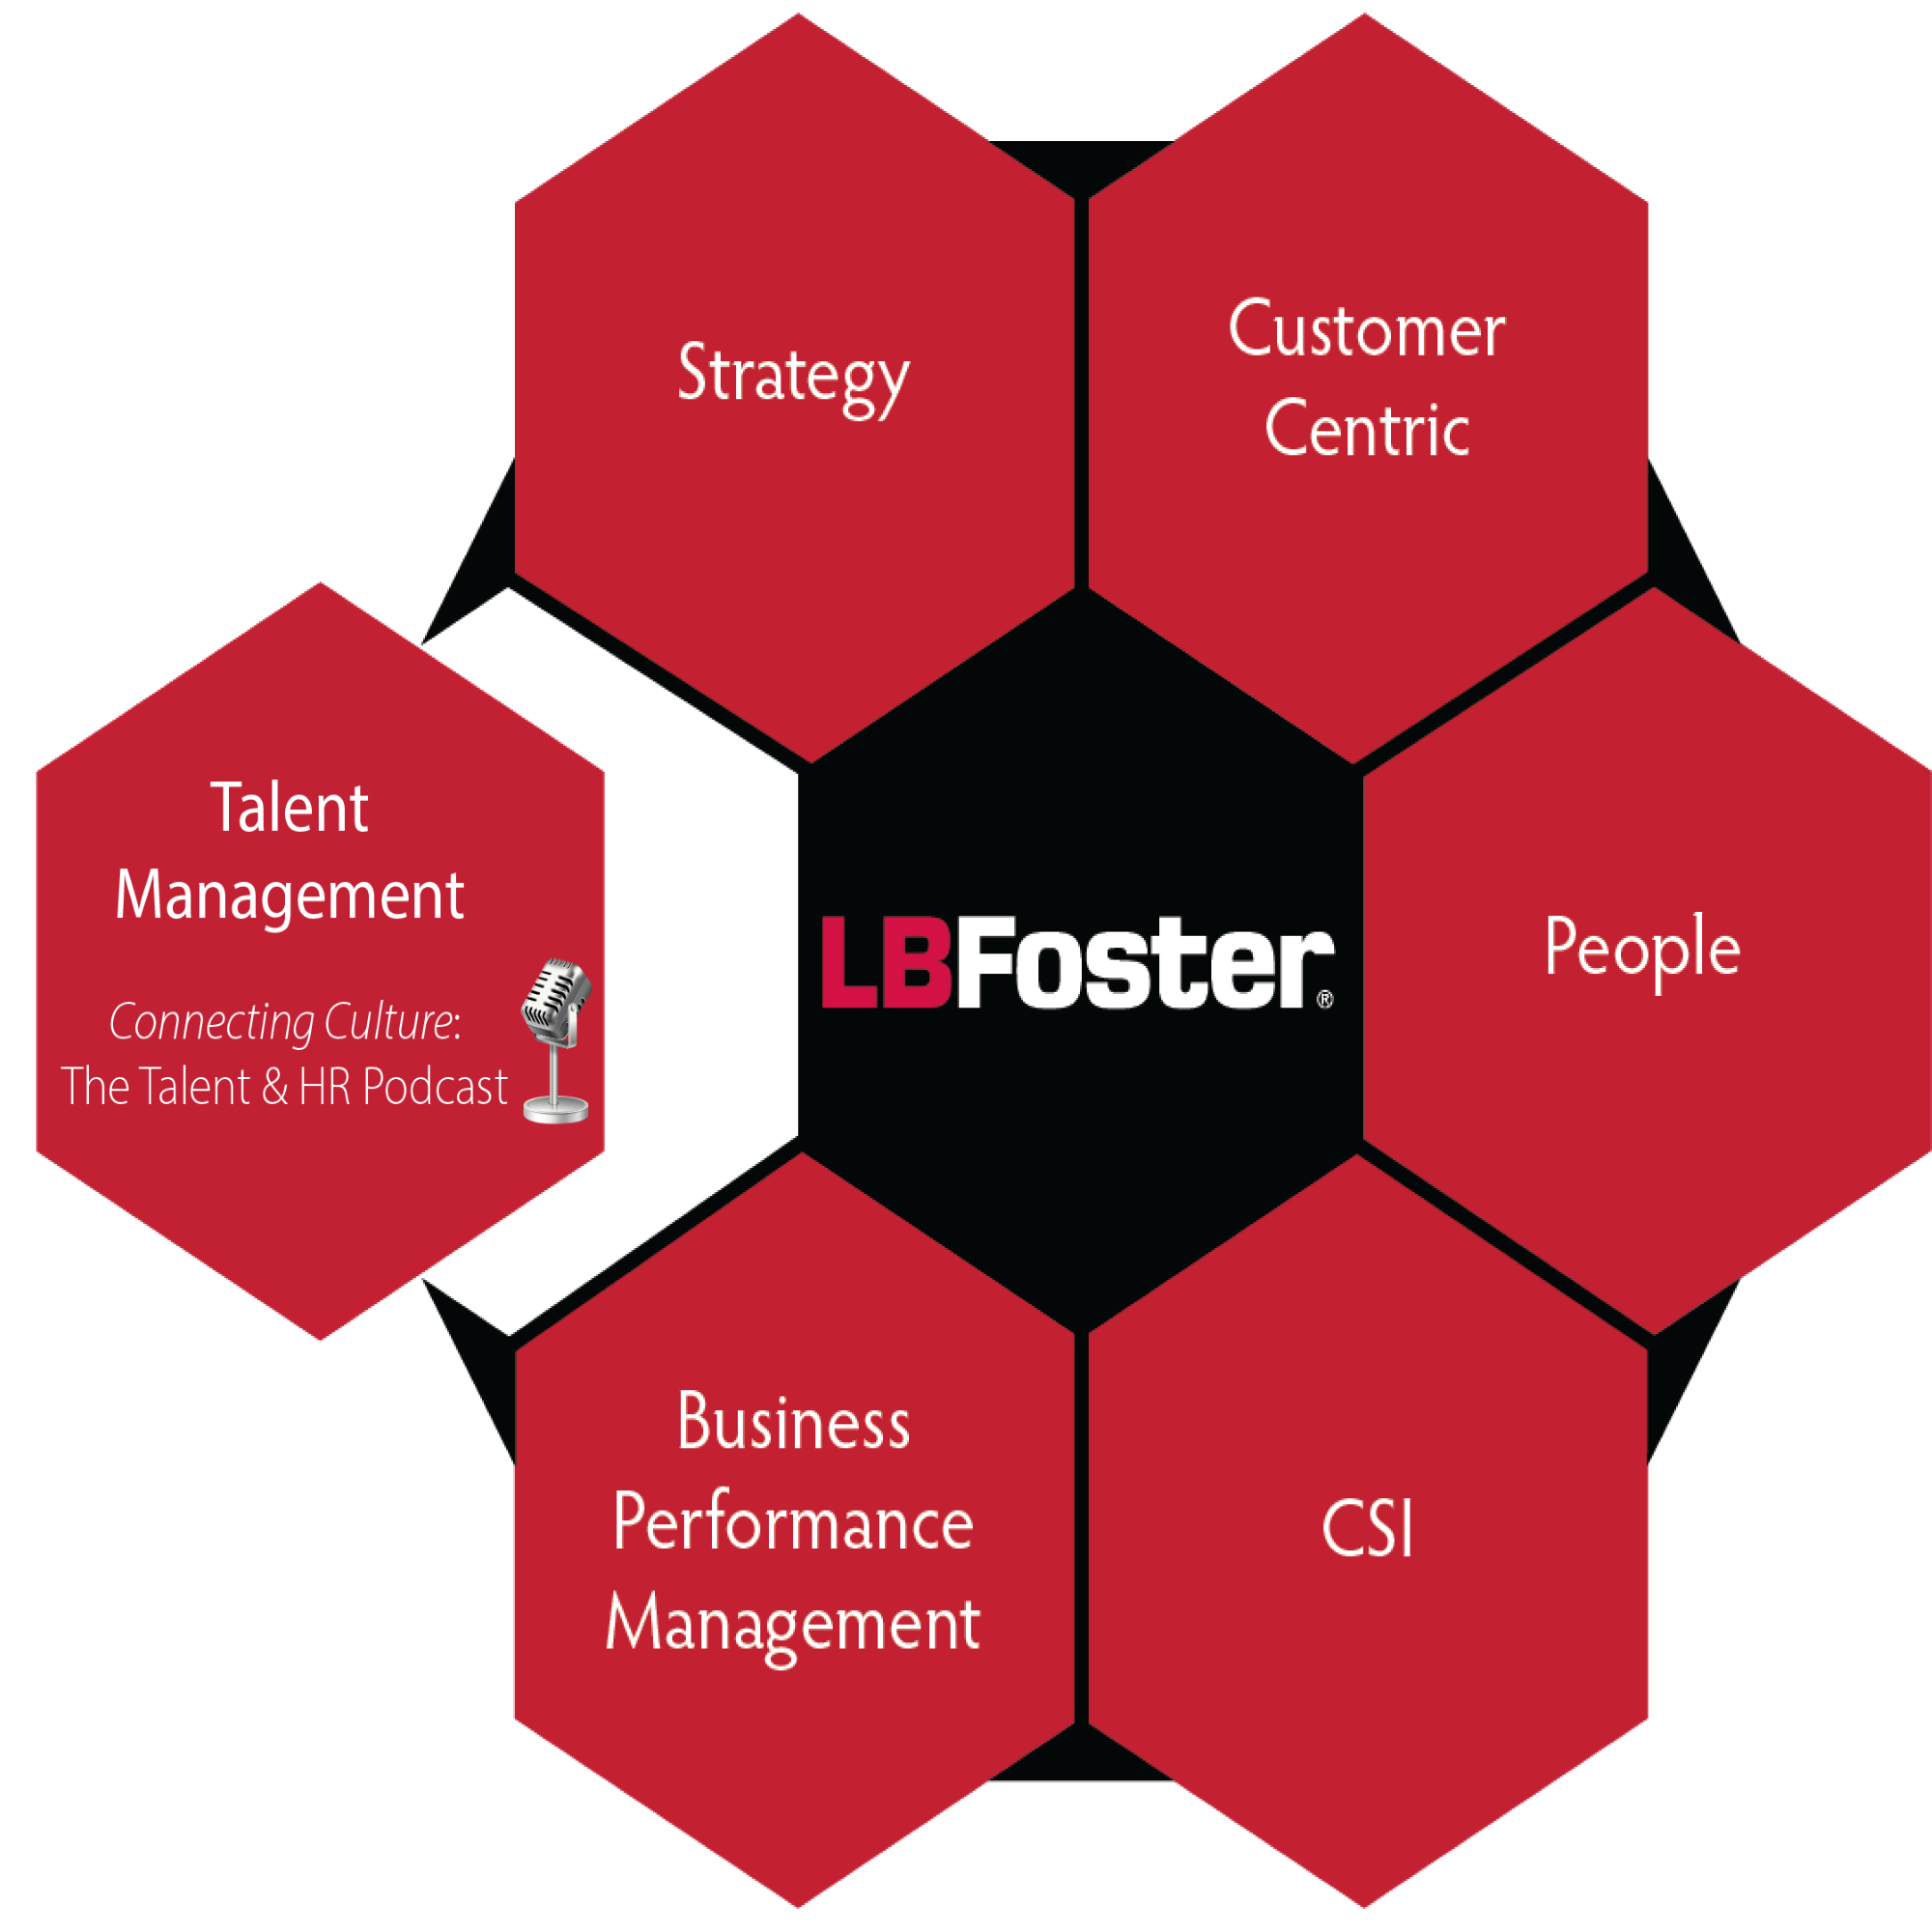 LB Foster's HR Internship Program